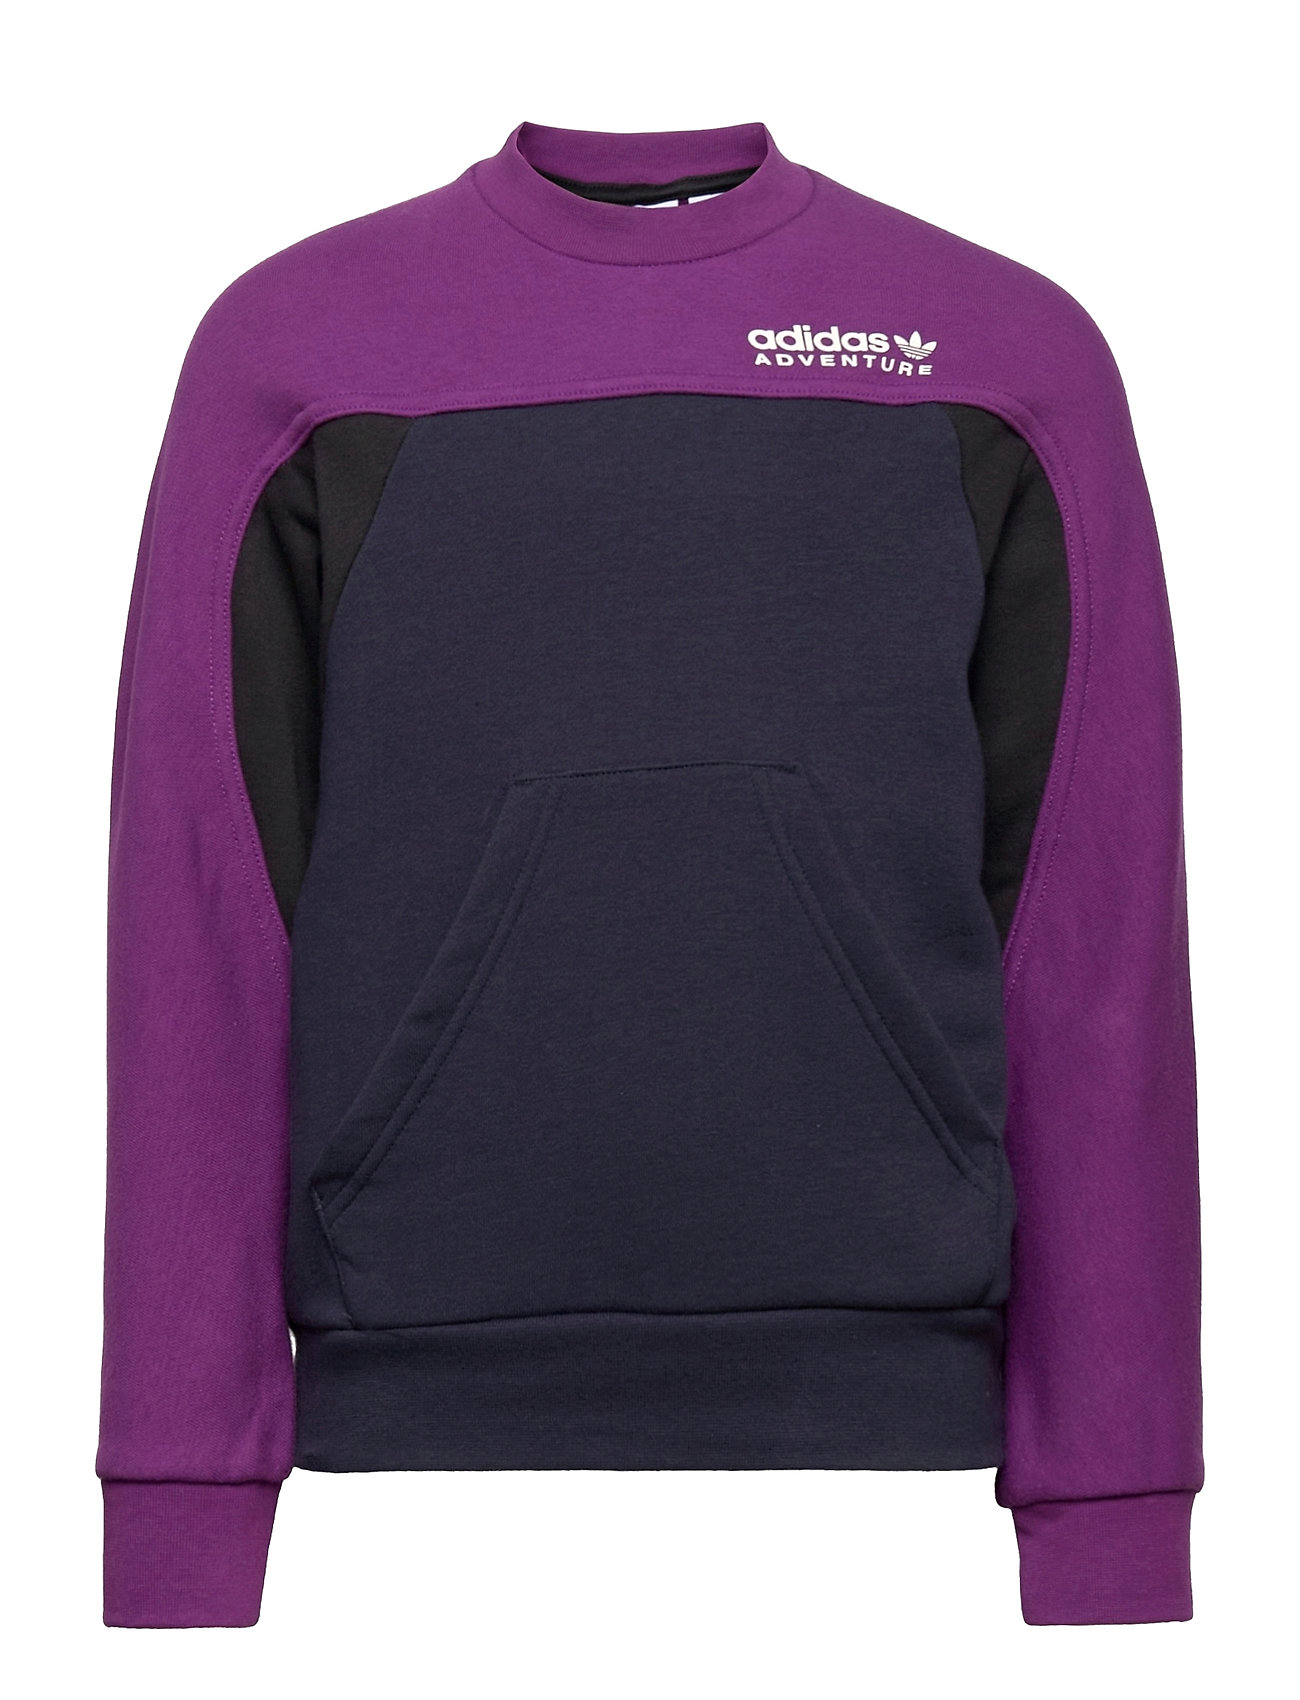 Adventure Crew Sweatshirt Svetari Collegepaita Liila Adidas Originals, adidas Originals